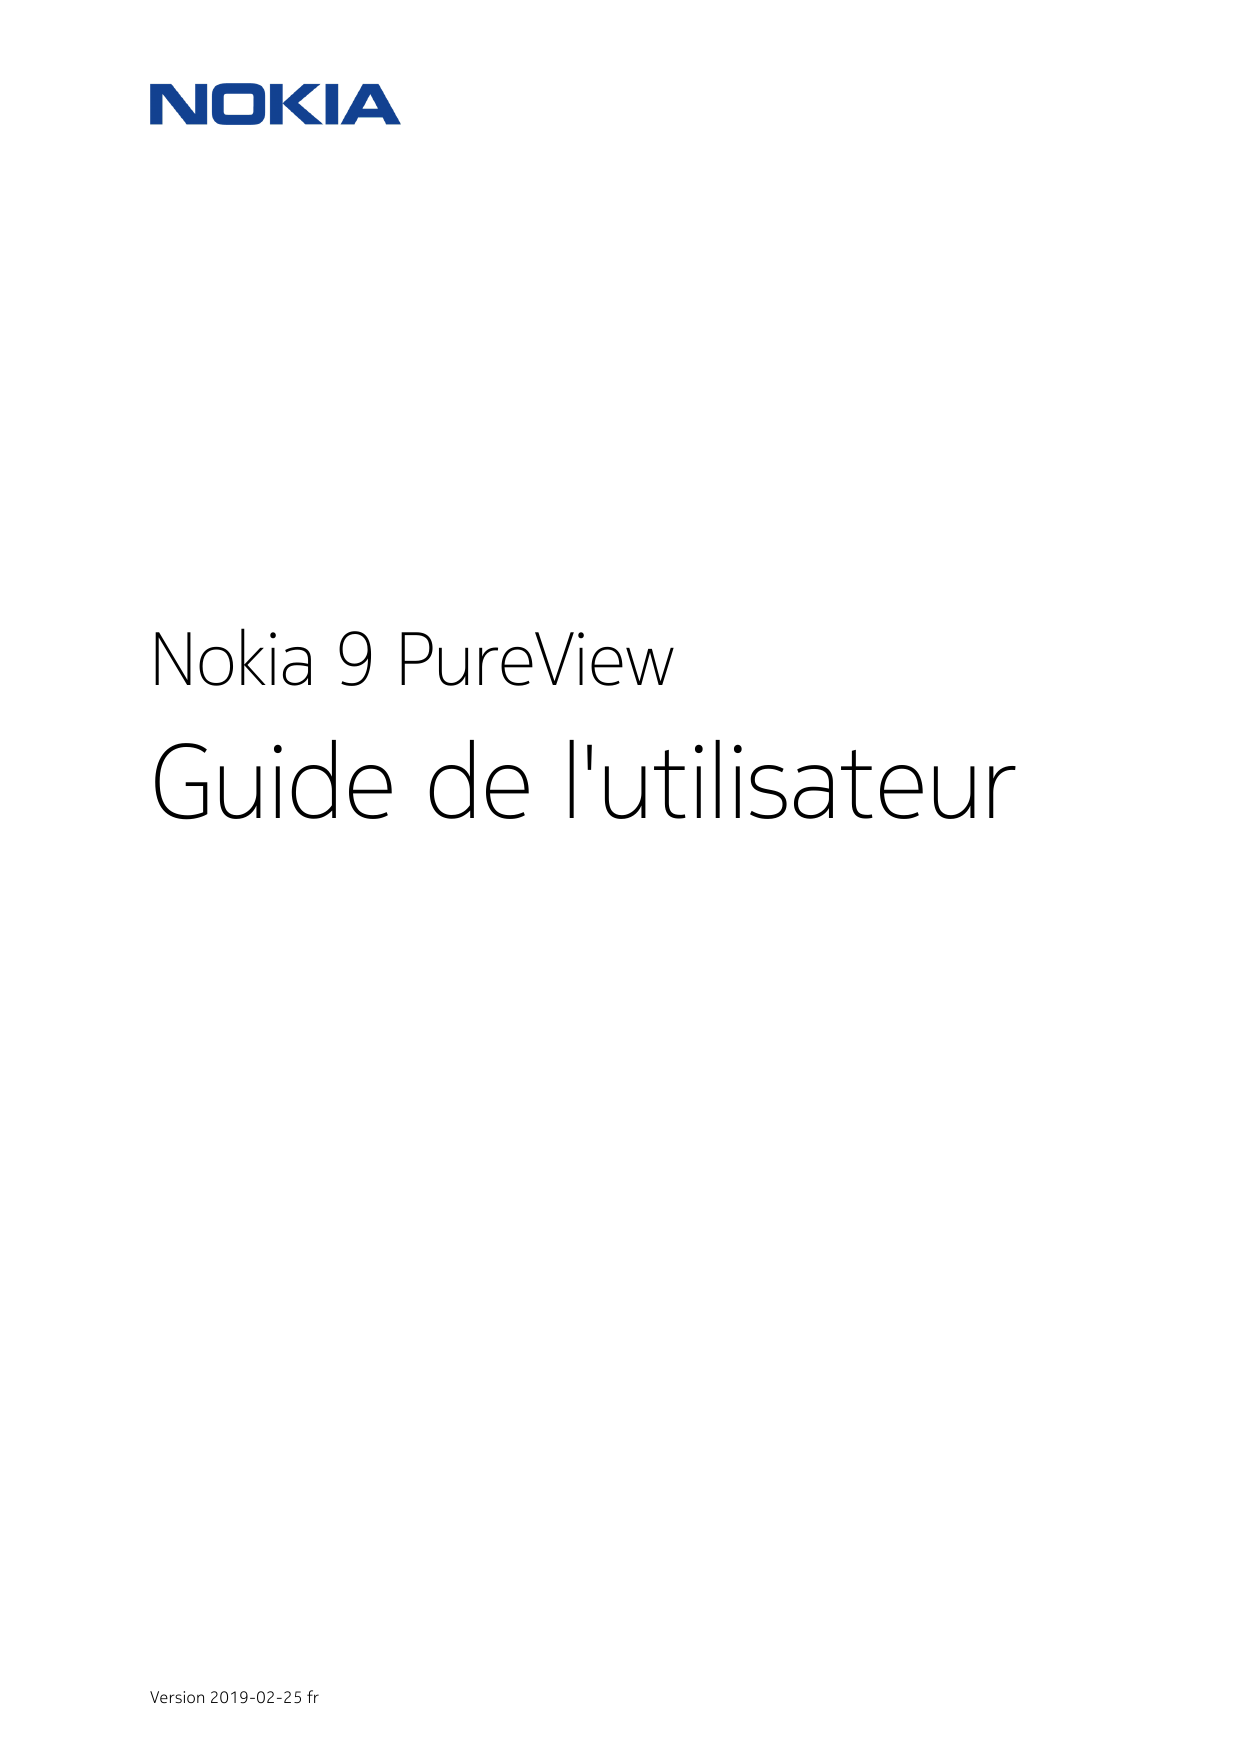 Nokia 9 PureViewGuide de l'utilisateurVersion 2019-02-25 fr